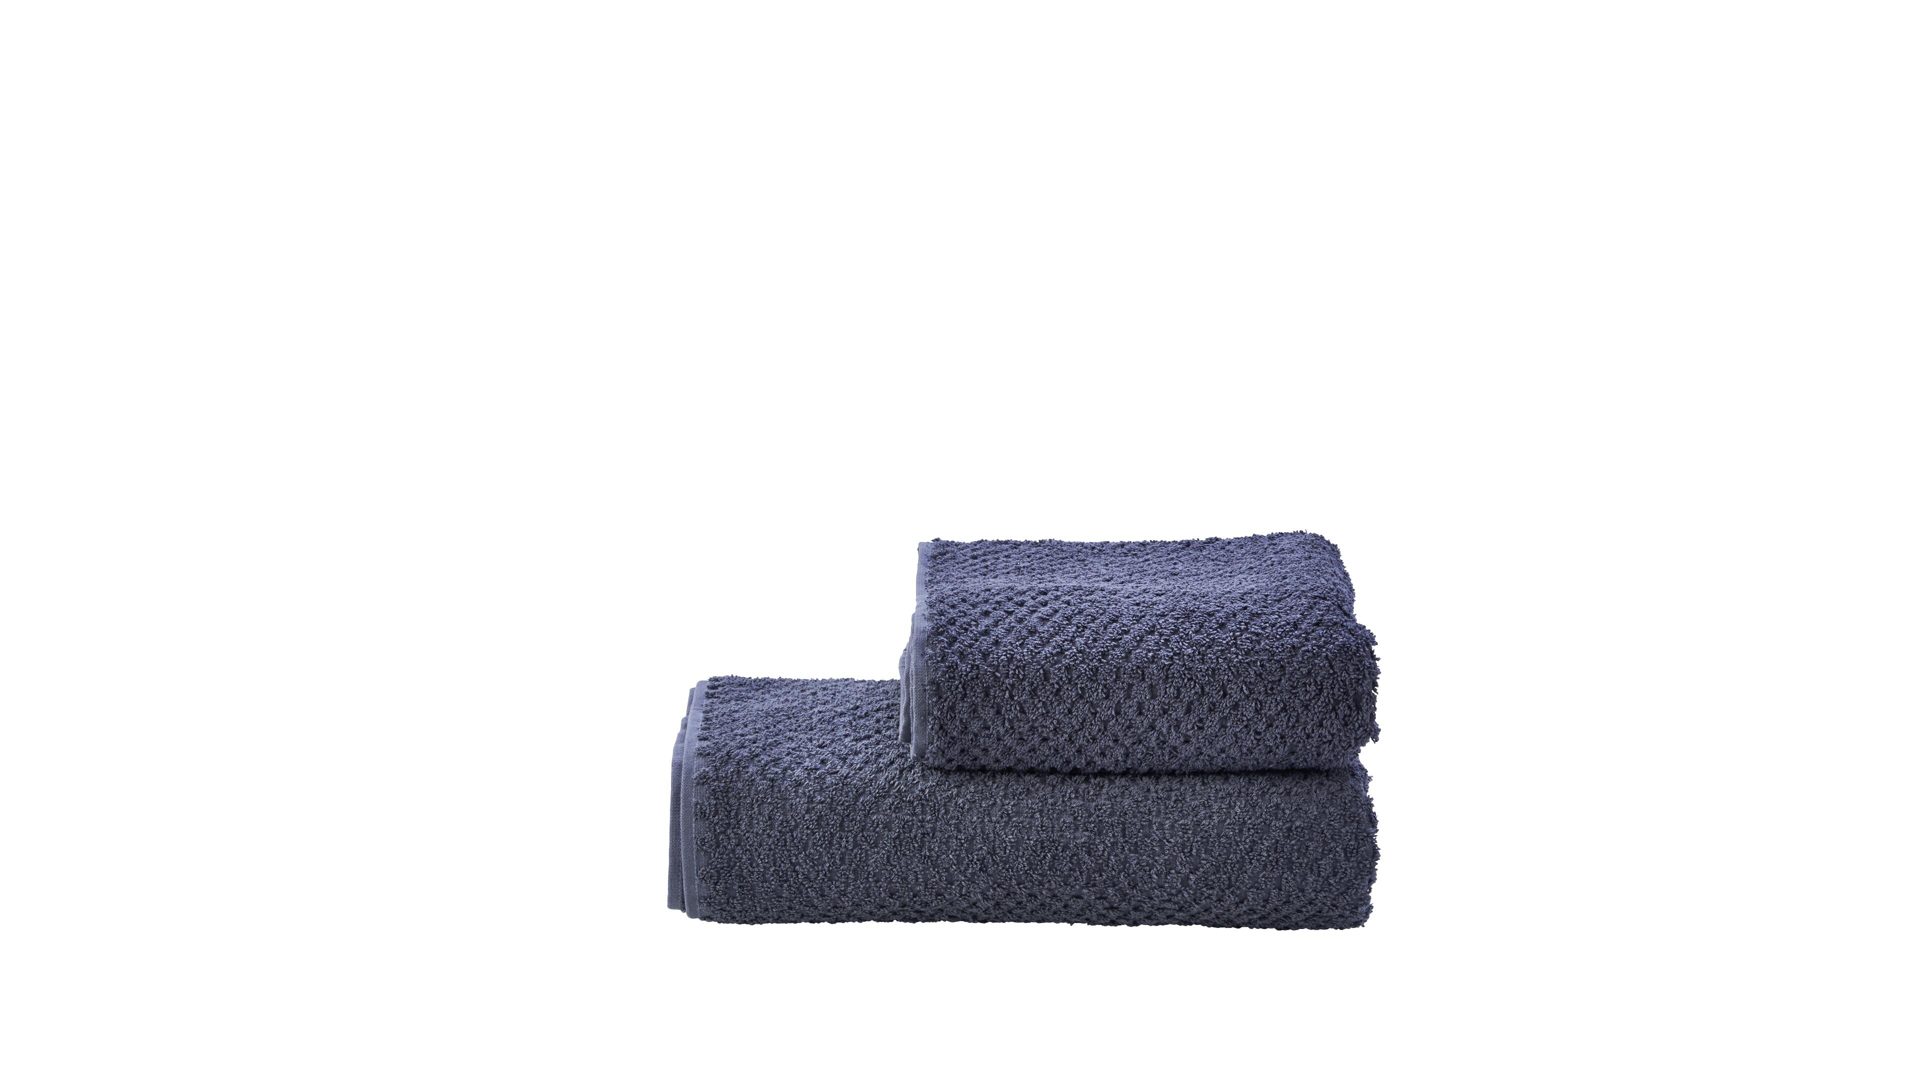 Handtuch-Set Done.® be different aus Stoff in Anthrazit DONE.® Handtuch-Set Provence Honeycomb - Heimtextilien anthrazitfarbene Baumwolle – zweiteilig